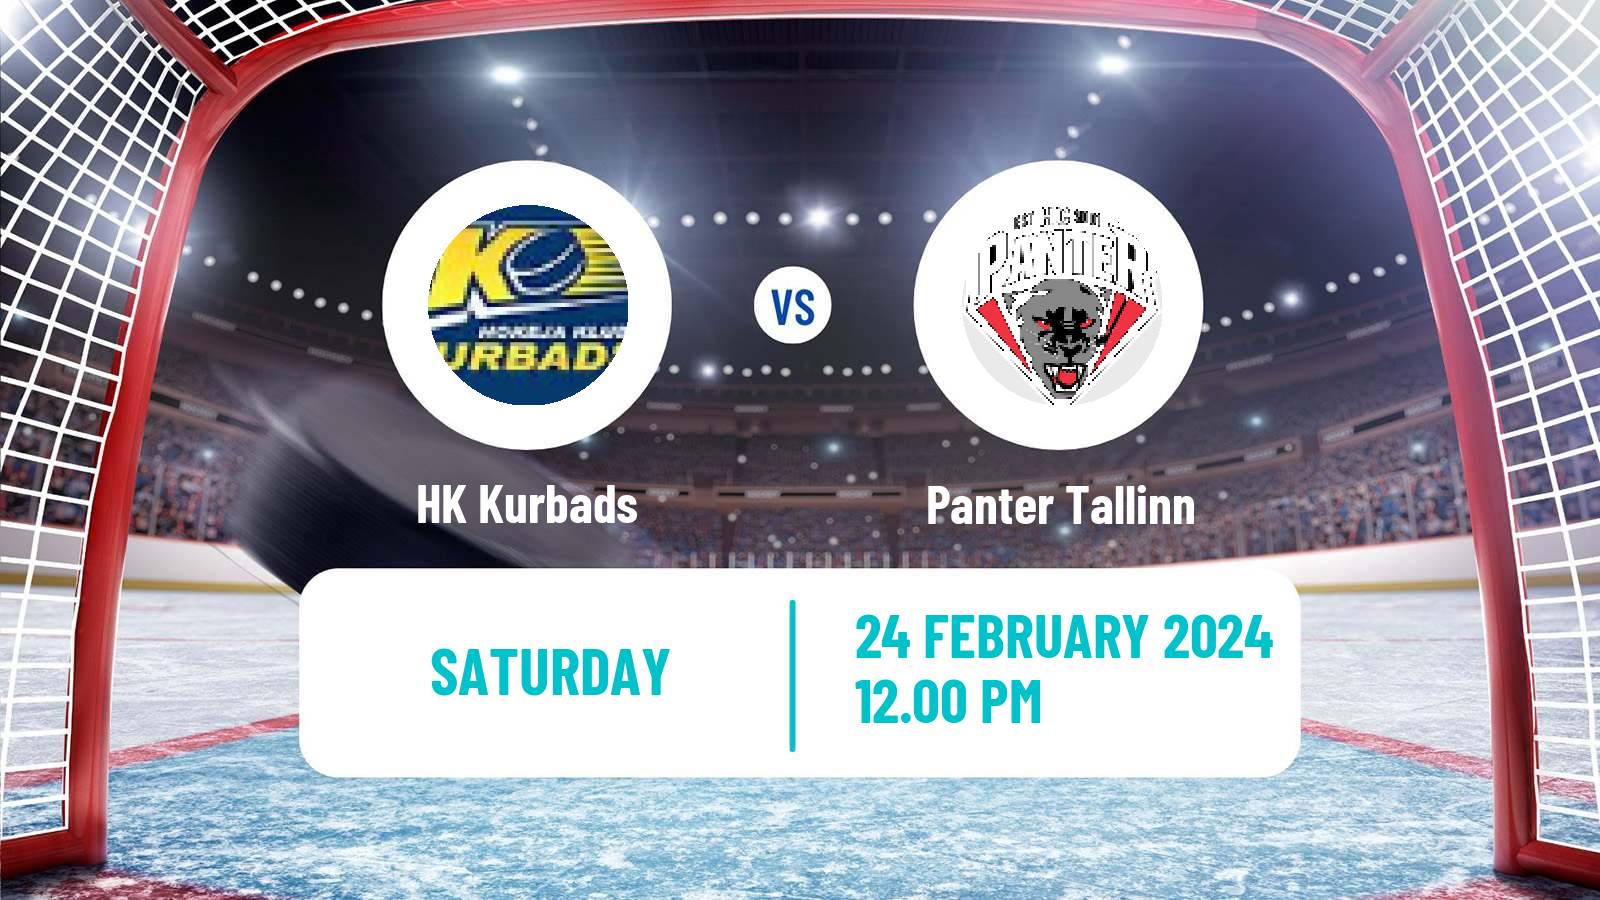 Hockey Latvian Hokeja Liga Kurbads - Panter Tallinn